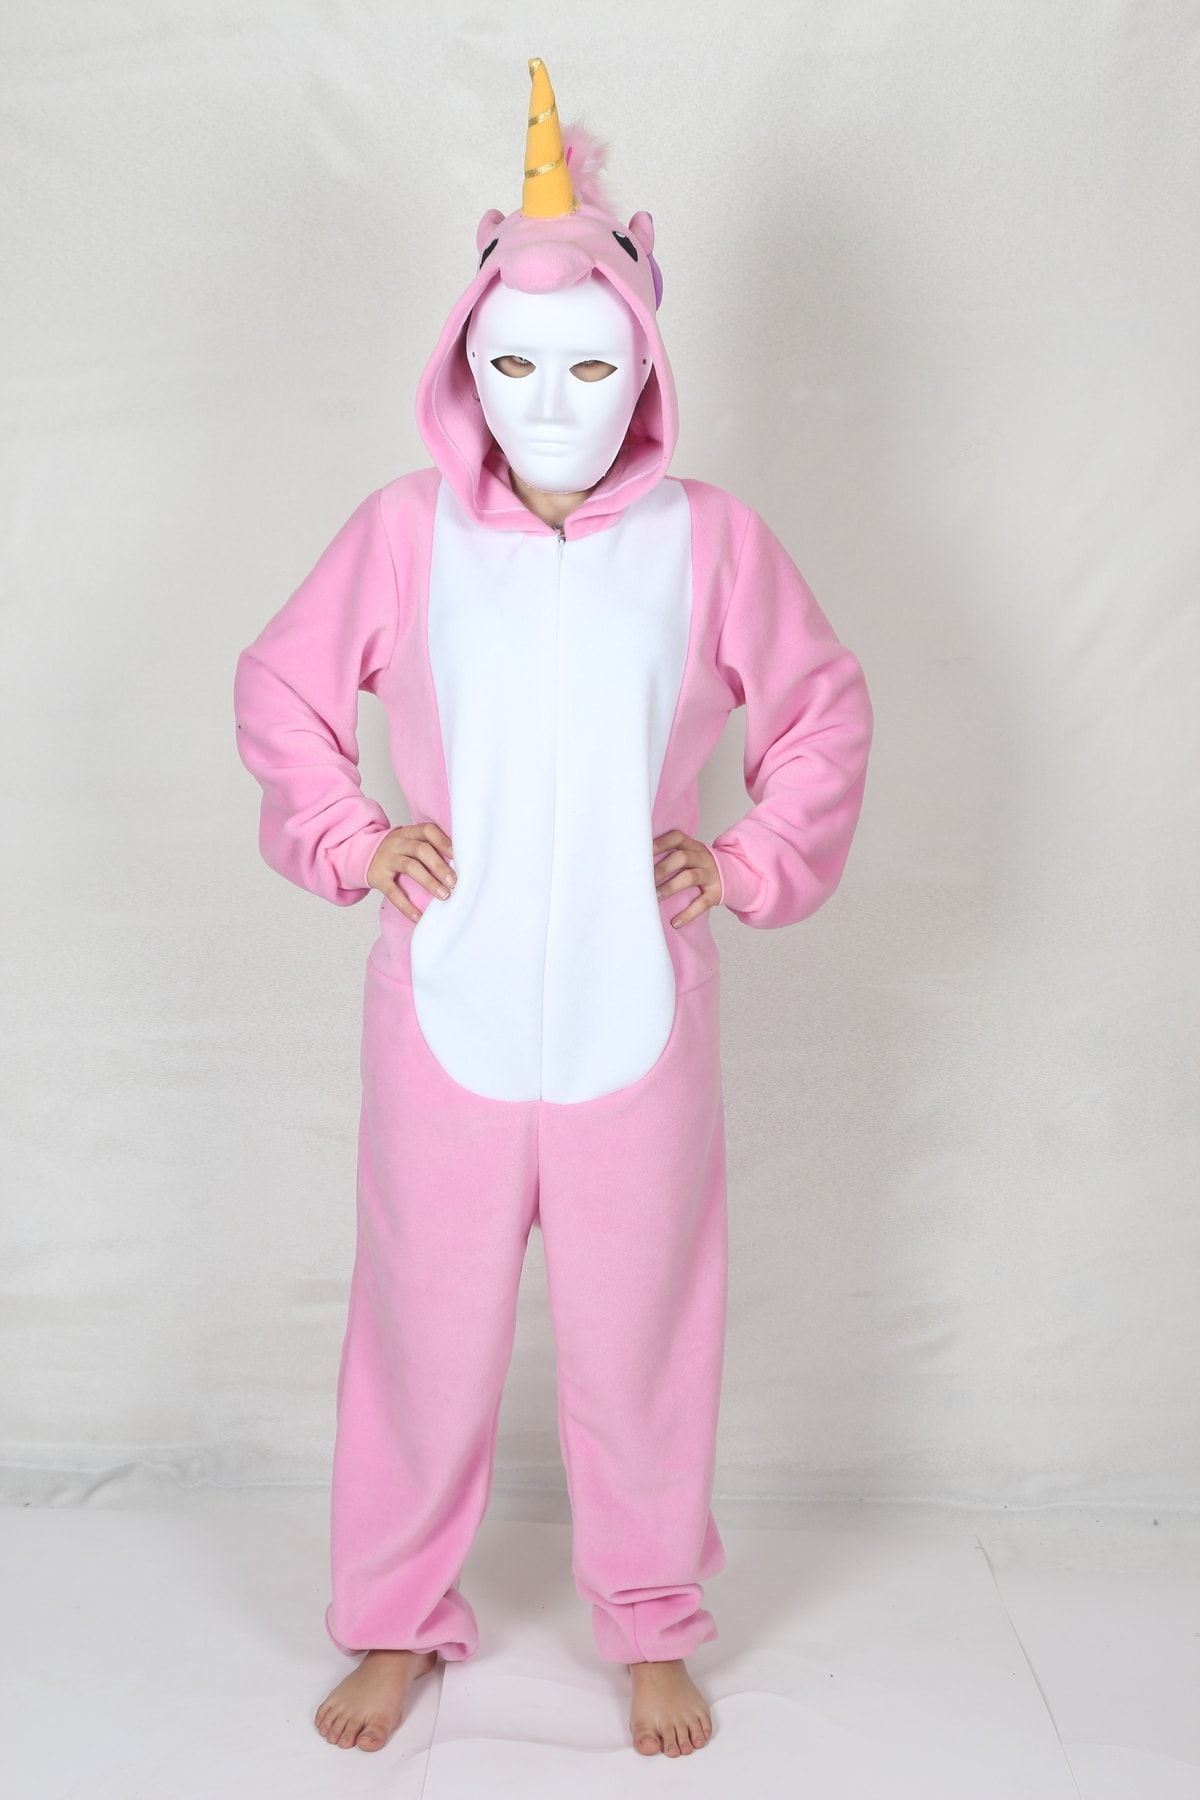 YÜSÜ Yetişkin Unicorn Kostümü Hayvan Kostümü Rahat Pijama Kostümü